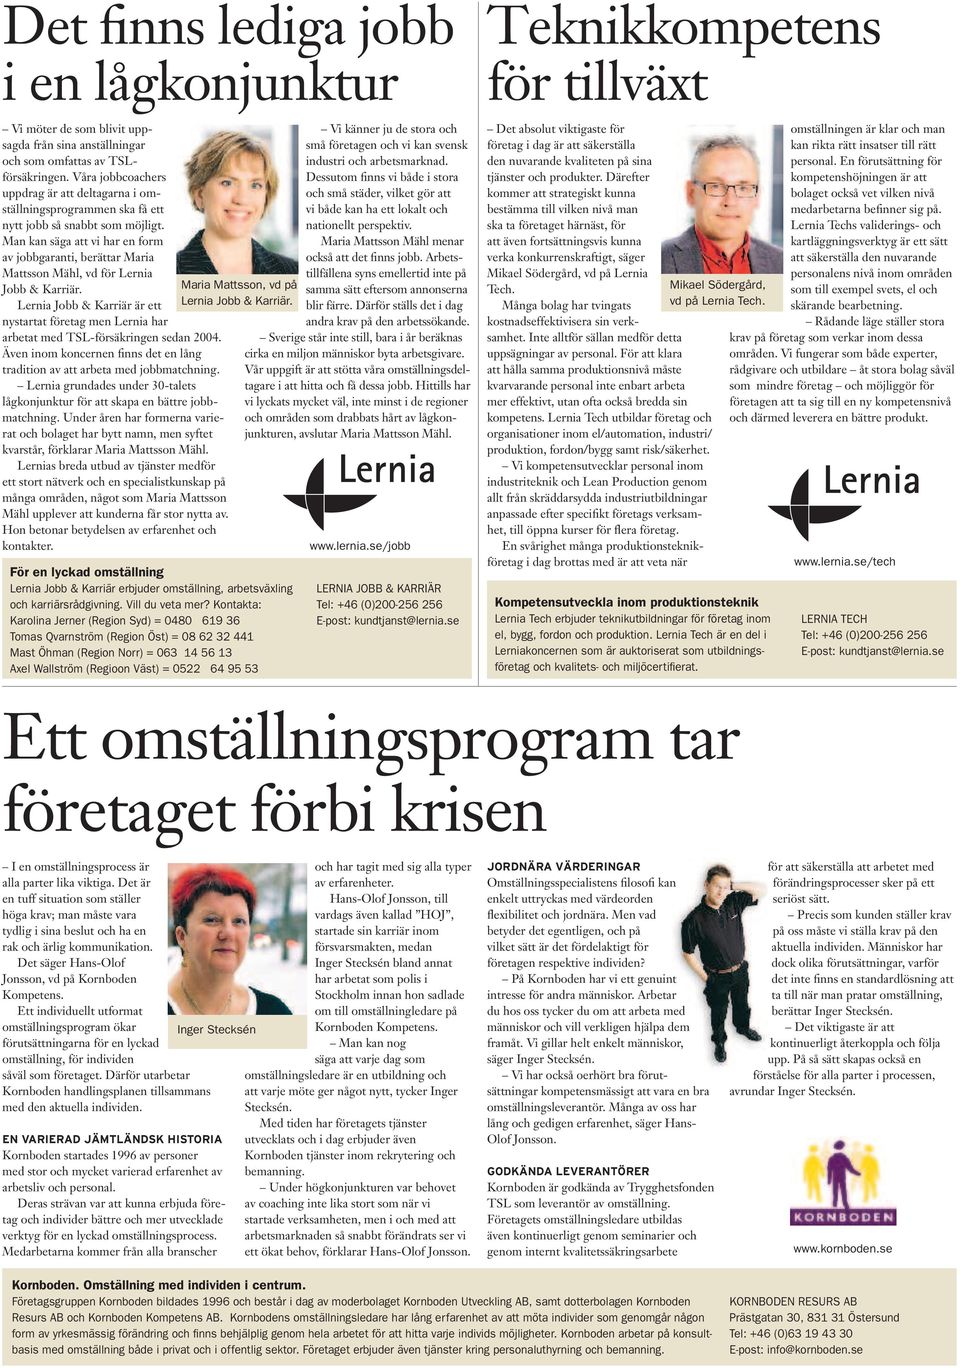 Man kan säga att vi har en form av jobbgaranti, berättar Maria Mattsson Mähl, vd för Lernia Jobb & Karriär.